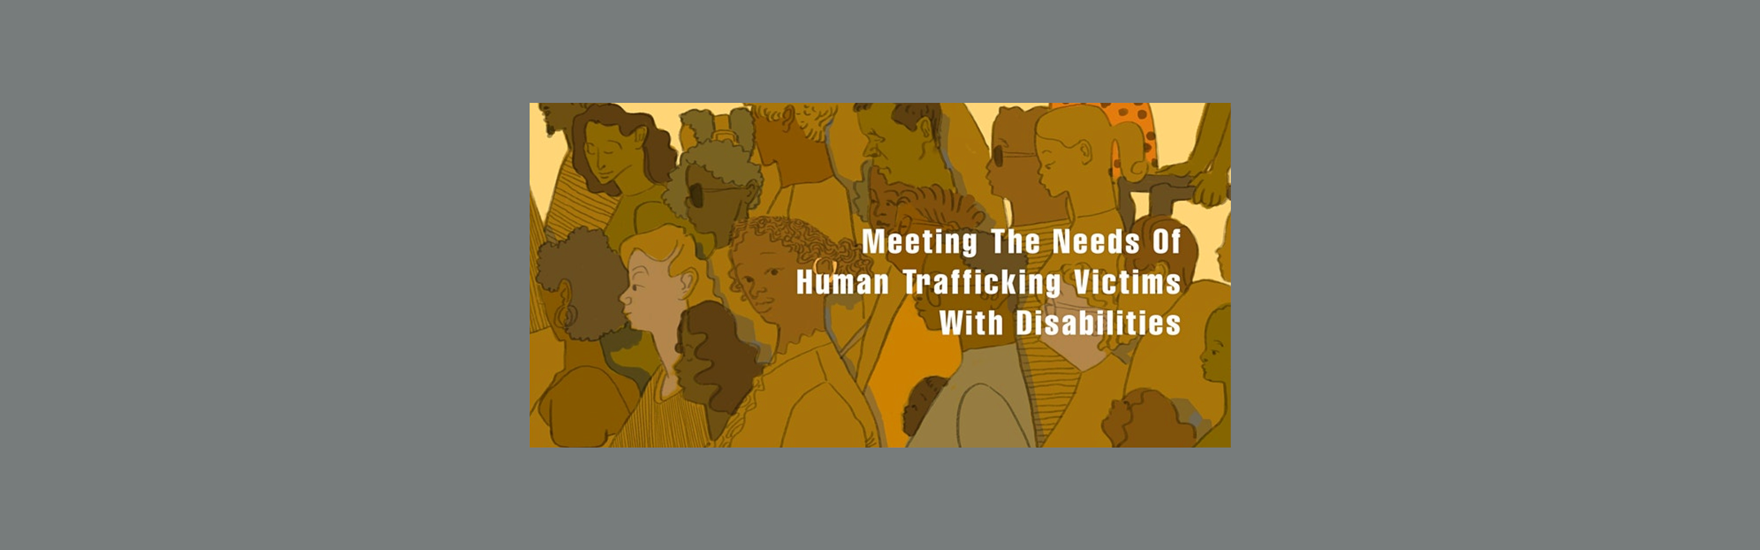 Human-trafficking-recap-post-featured-image